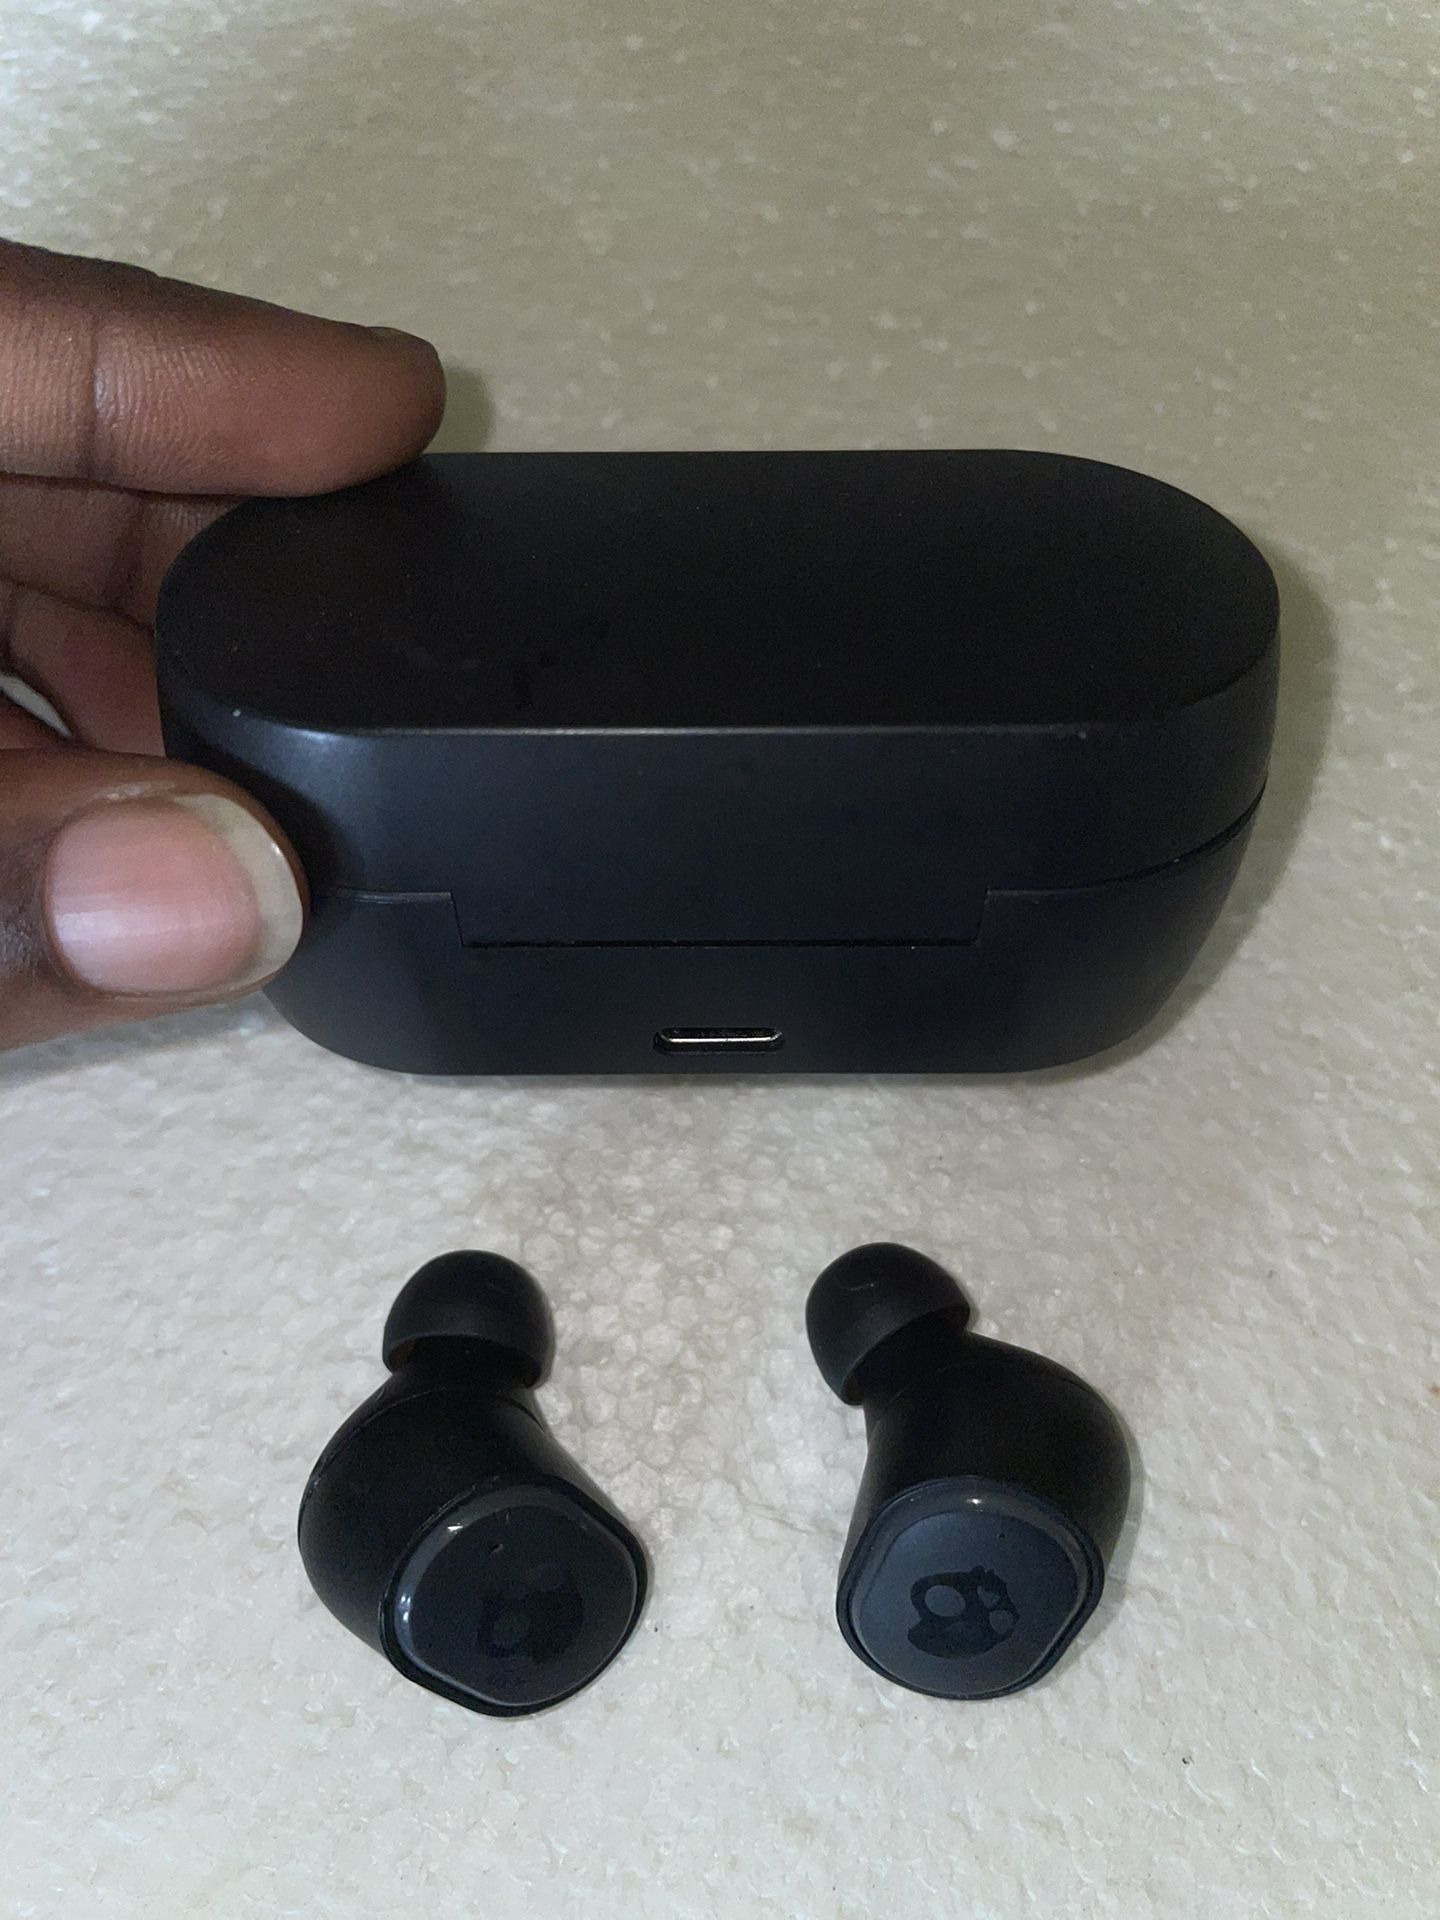 Skullcandy wireless earbuds 